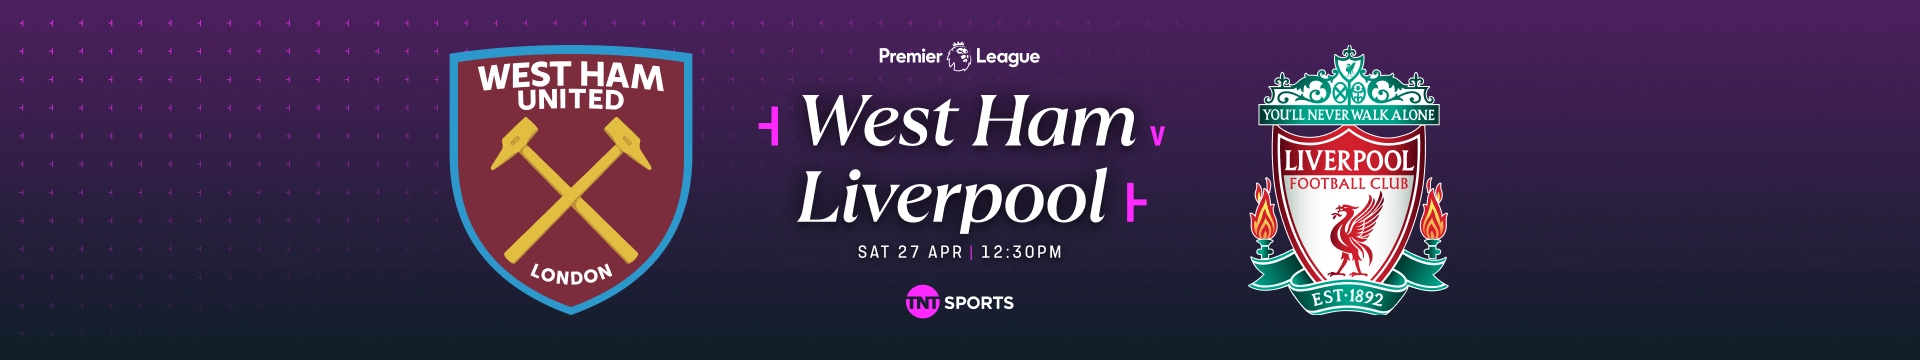 West Ham v Liverpool Saturday 27 April at 12:30pm